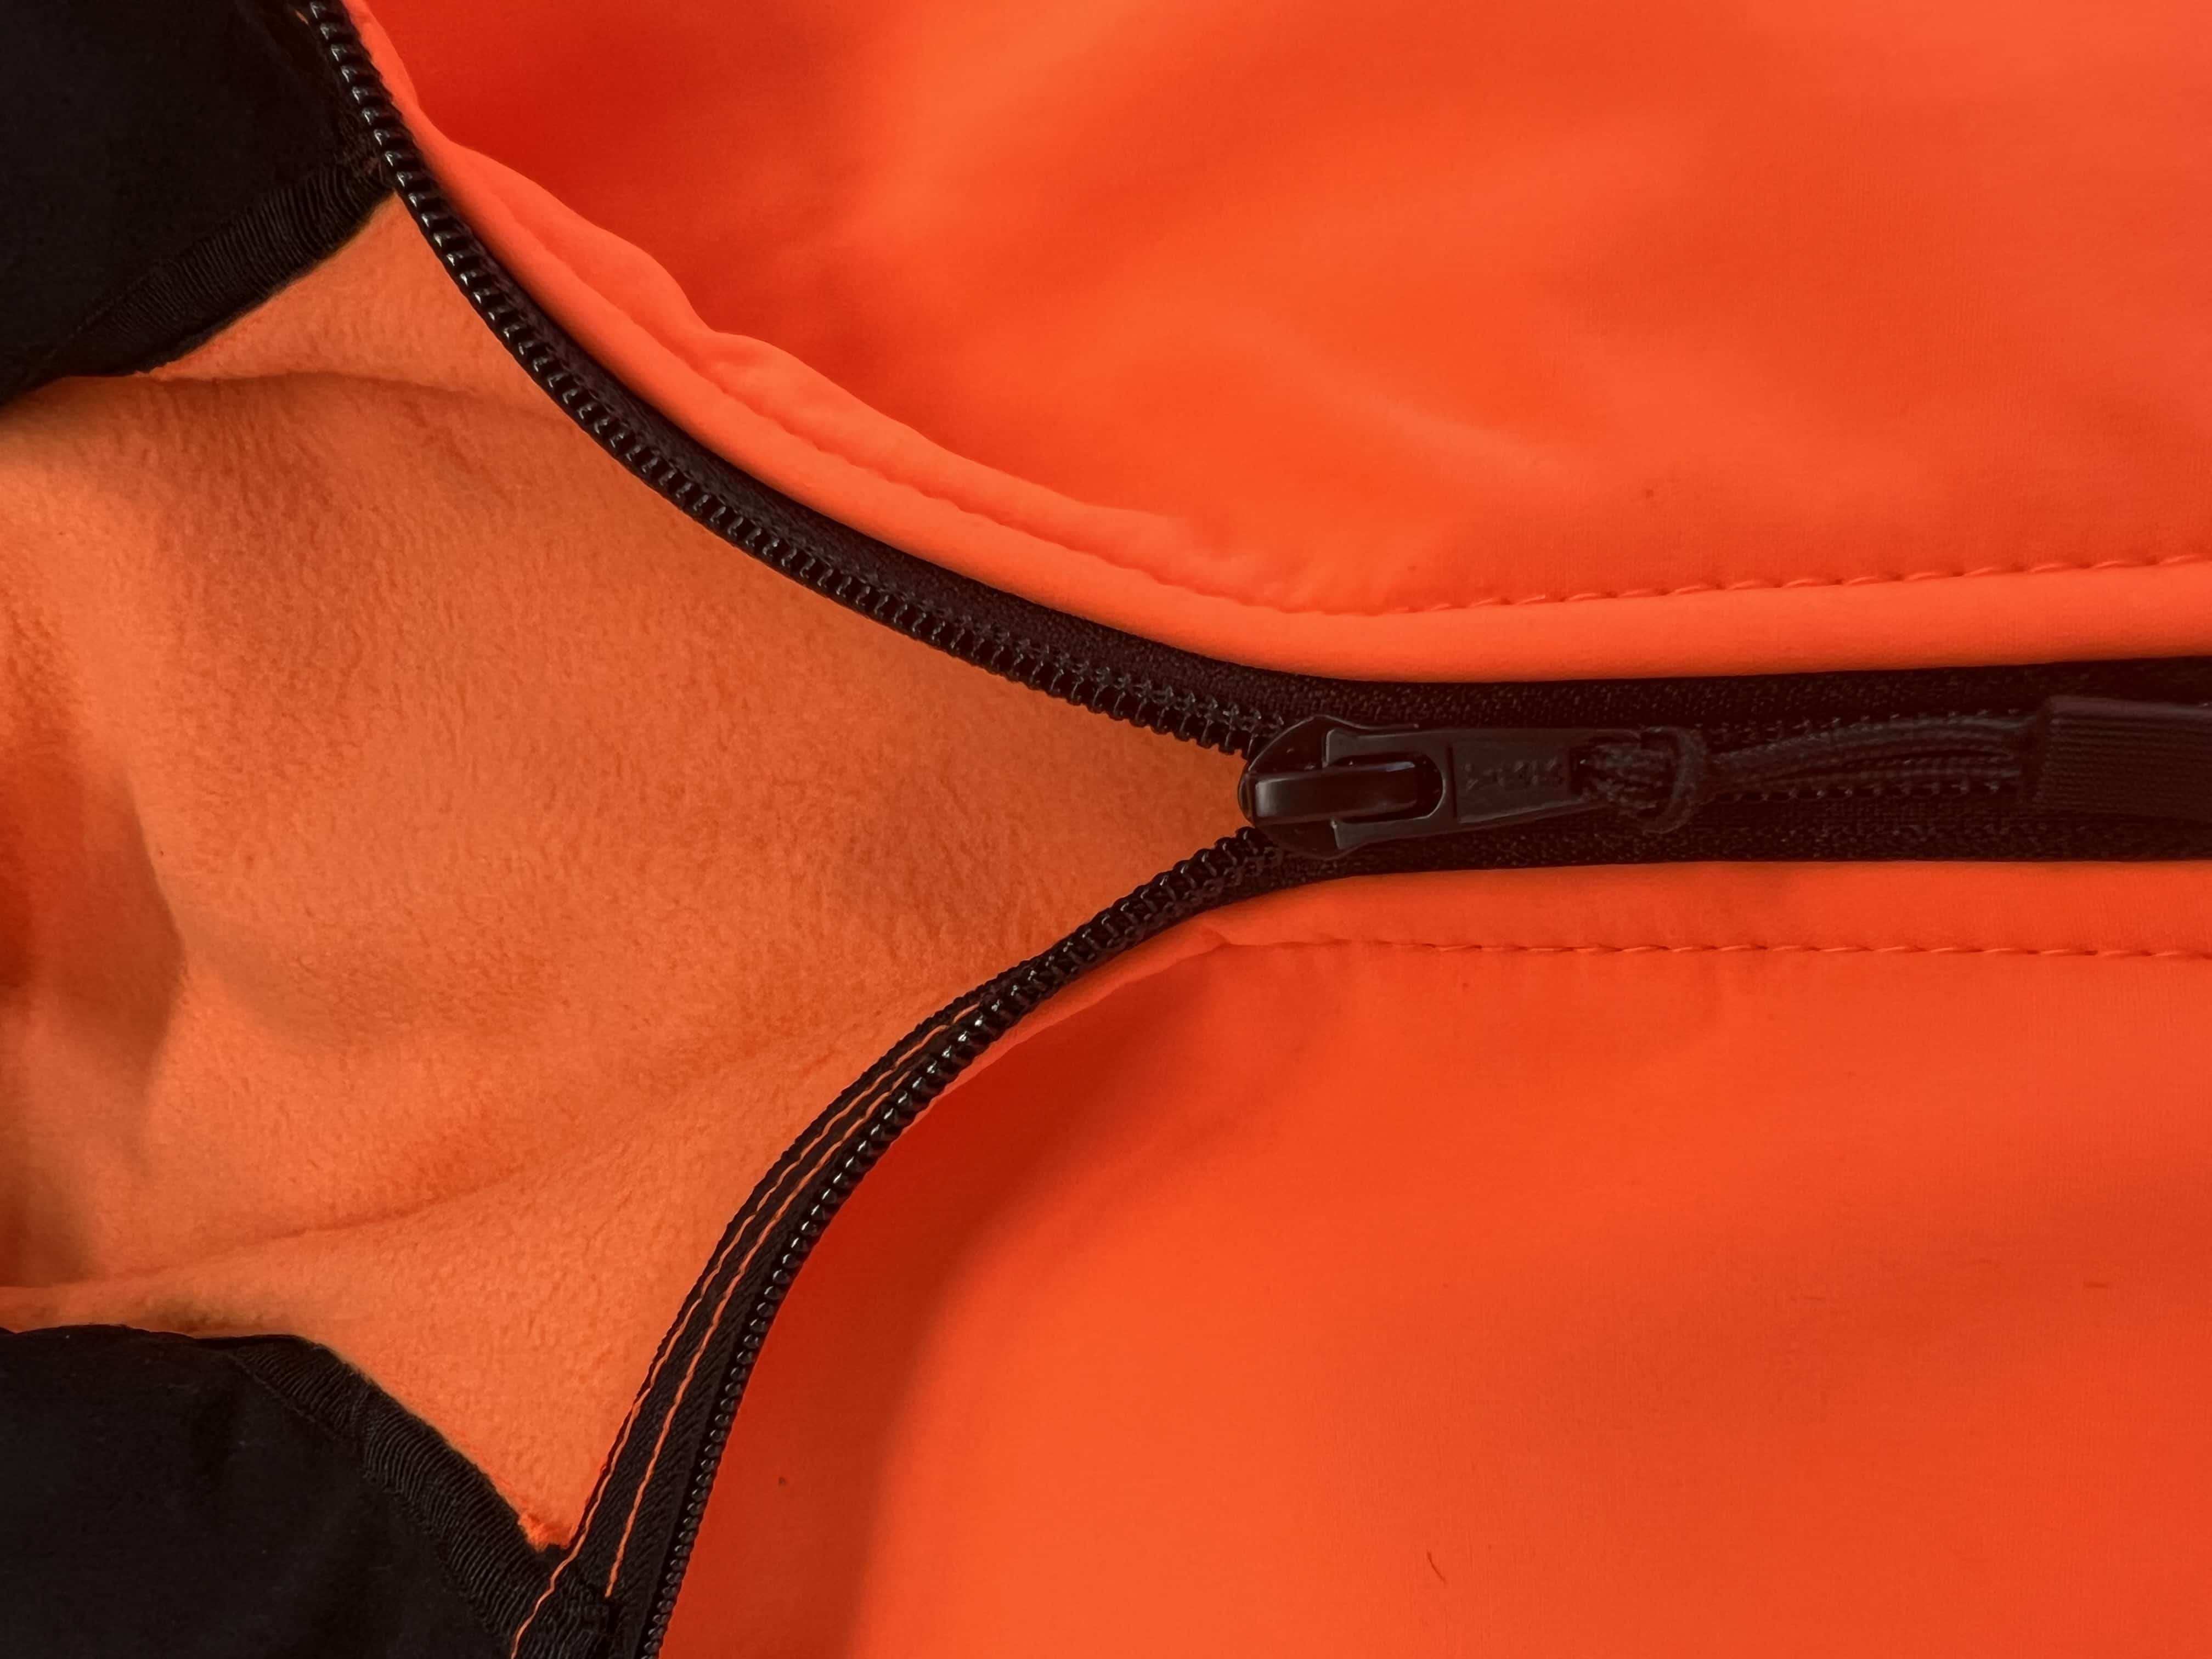 Rodopi® Winterjas Veiligheidsjas Reflecterend - Oranje/Zwart - maat S